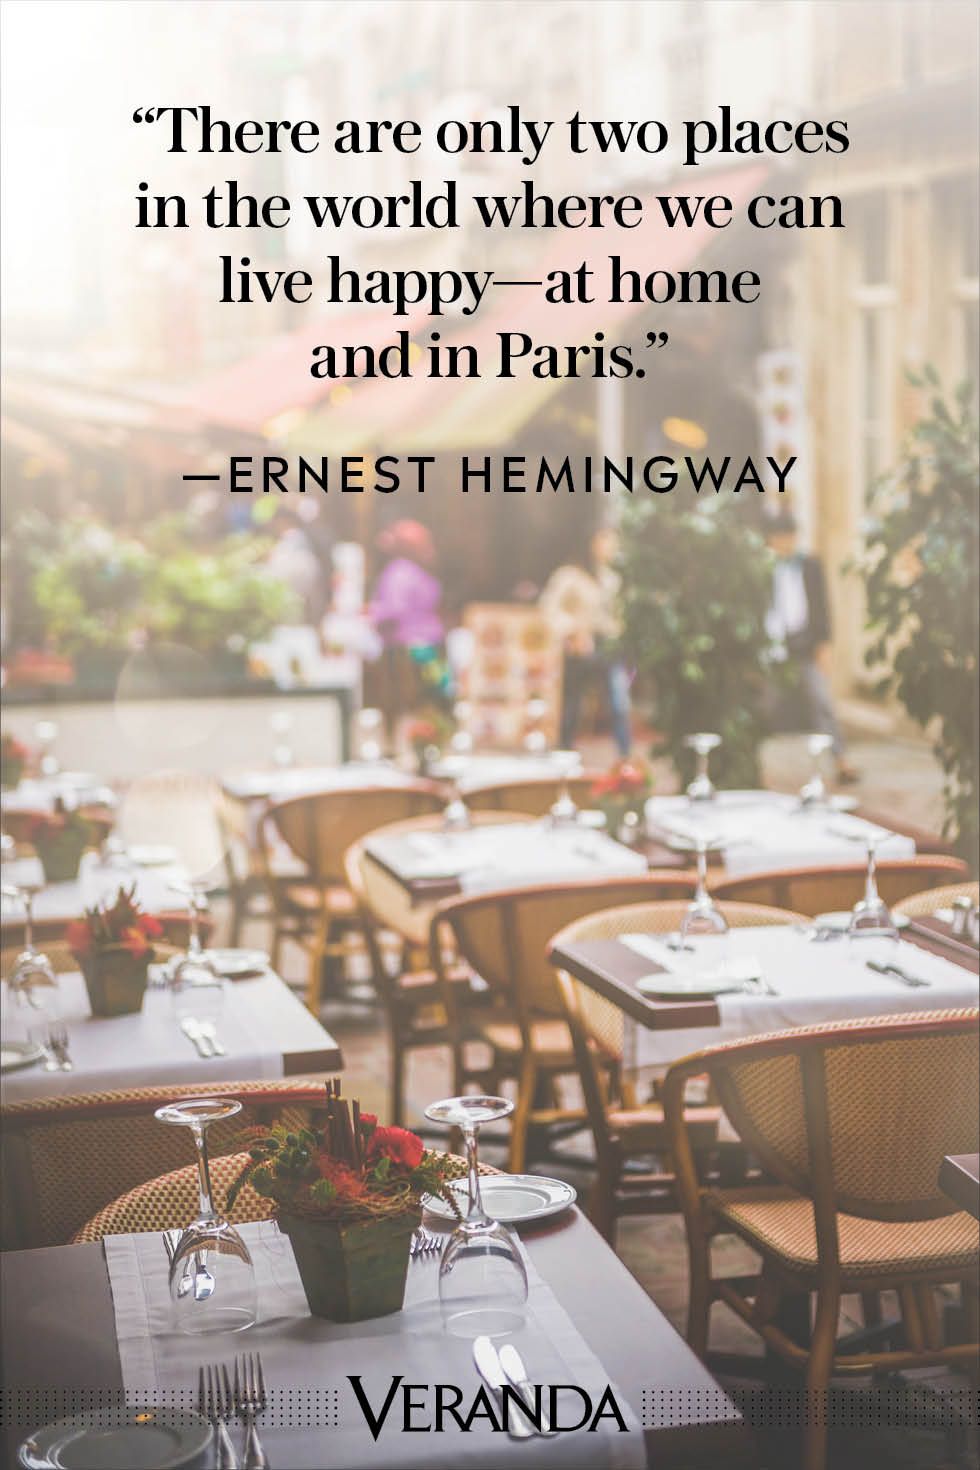 Veranda Quotes about Paris Ernest Hemingway